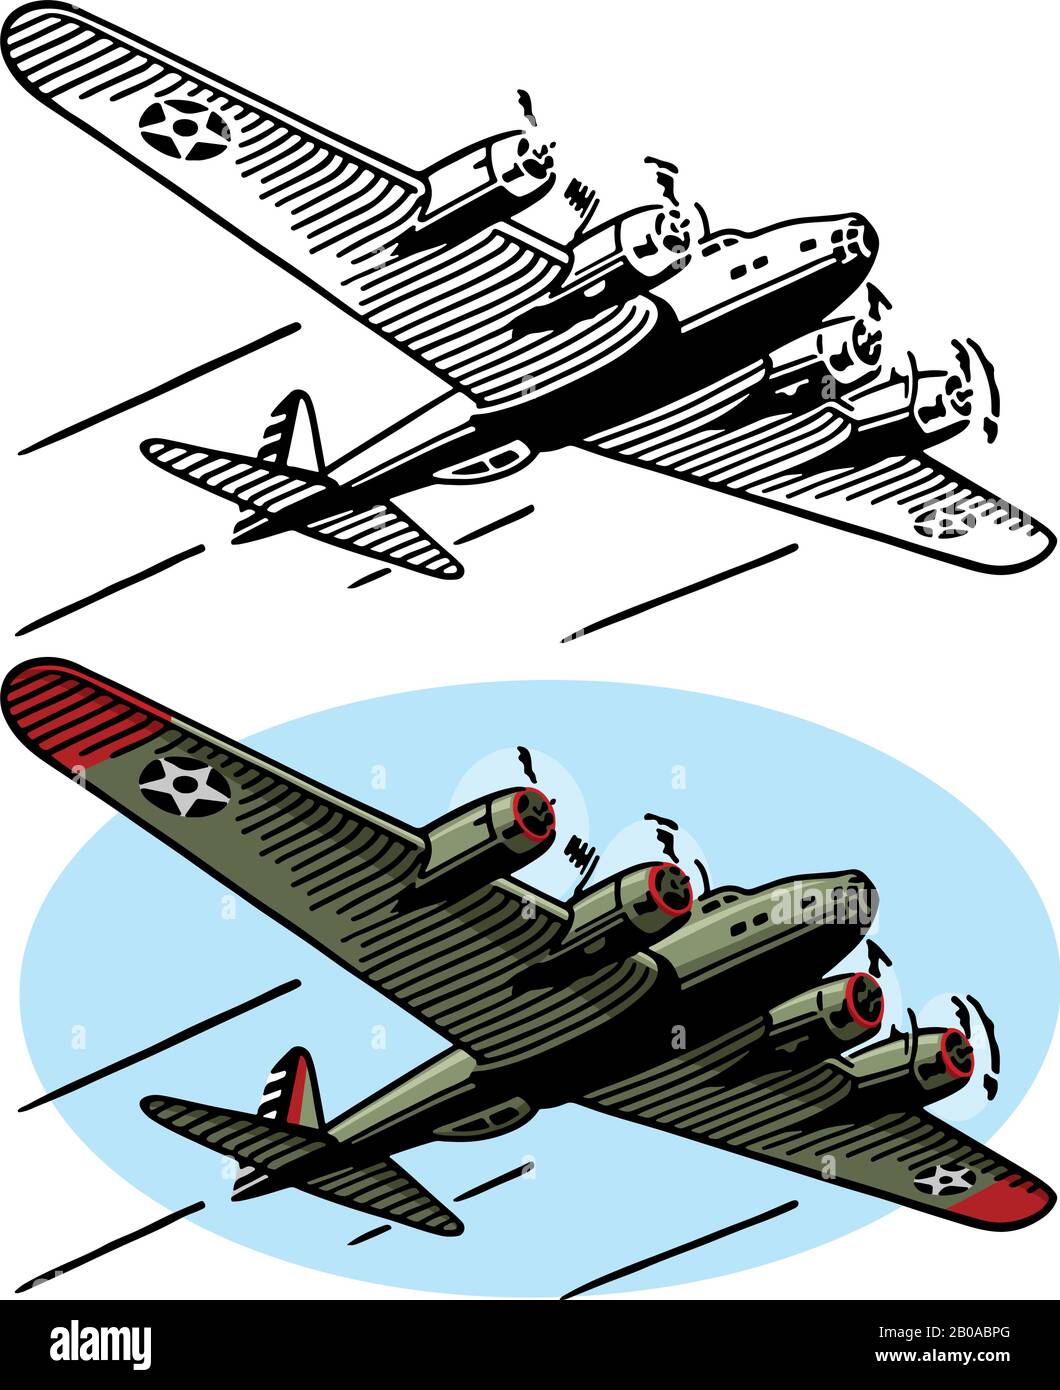 Eine Zeichnung des amerikanischen Luftfahrzeugs des zweiten Weltkriegs des B-17-Bombers. Stock Vektor